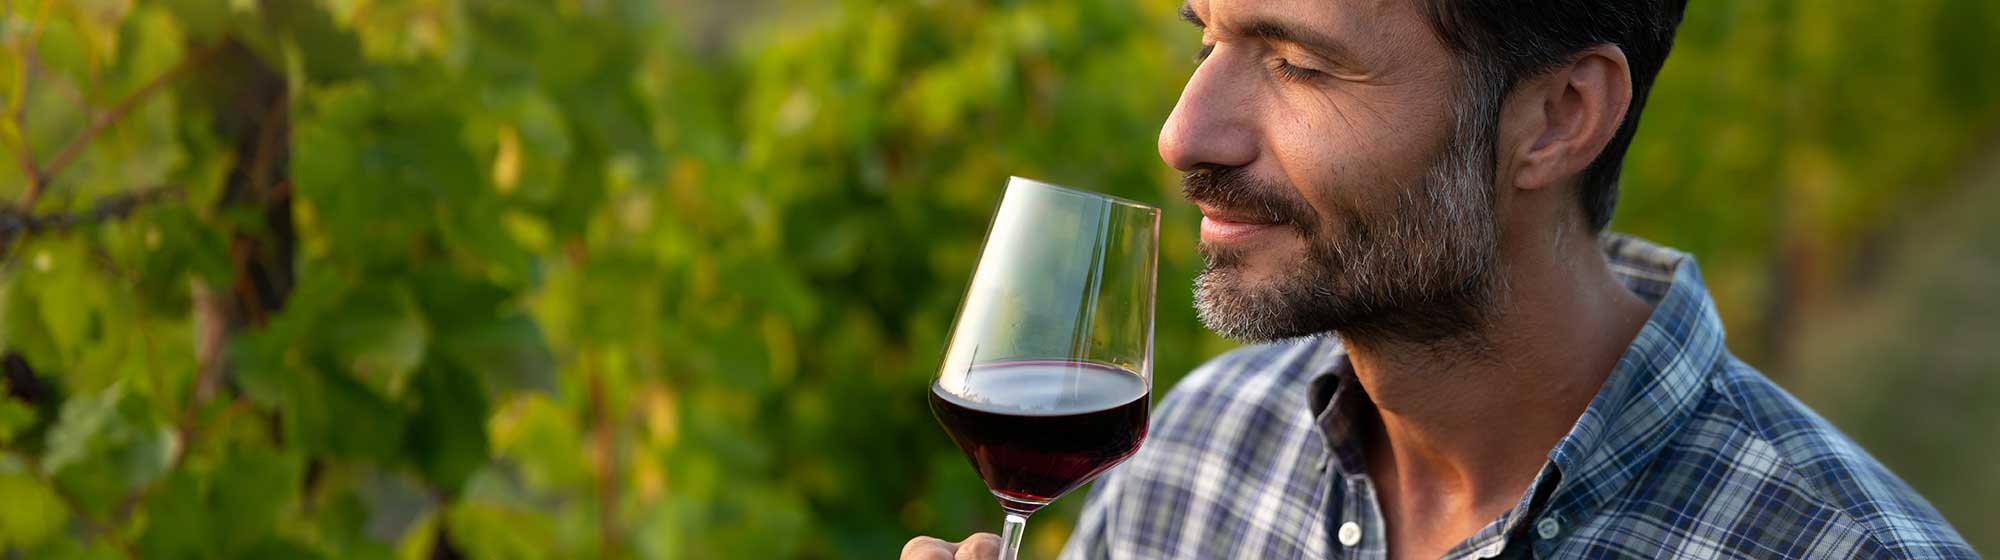 Un viticulteur goûte son vin dans un verre